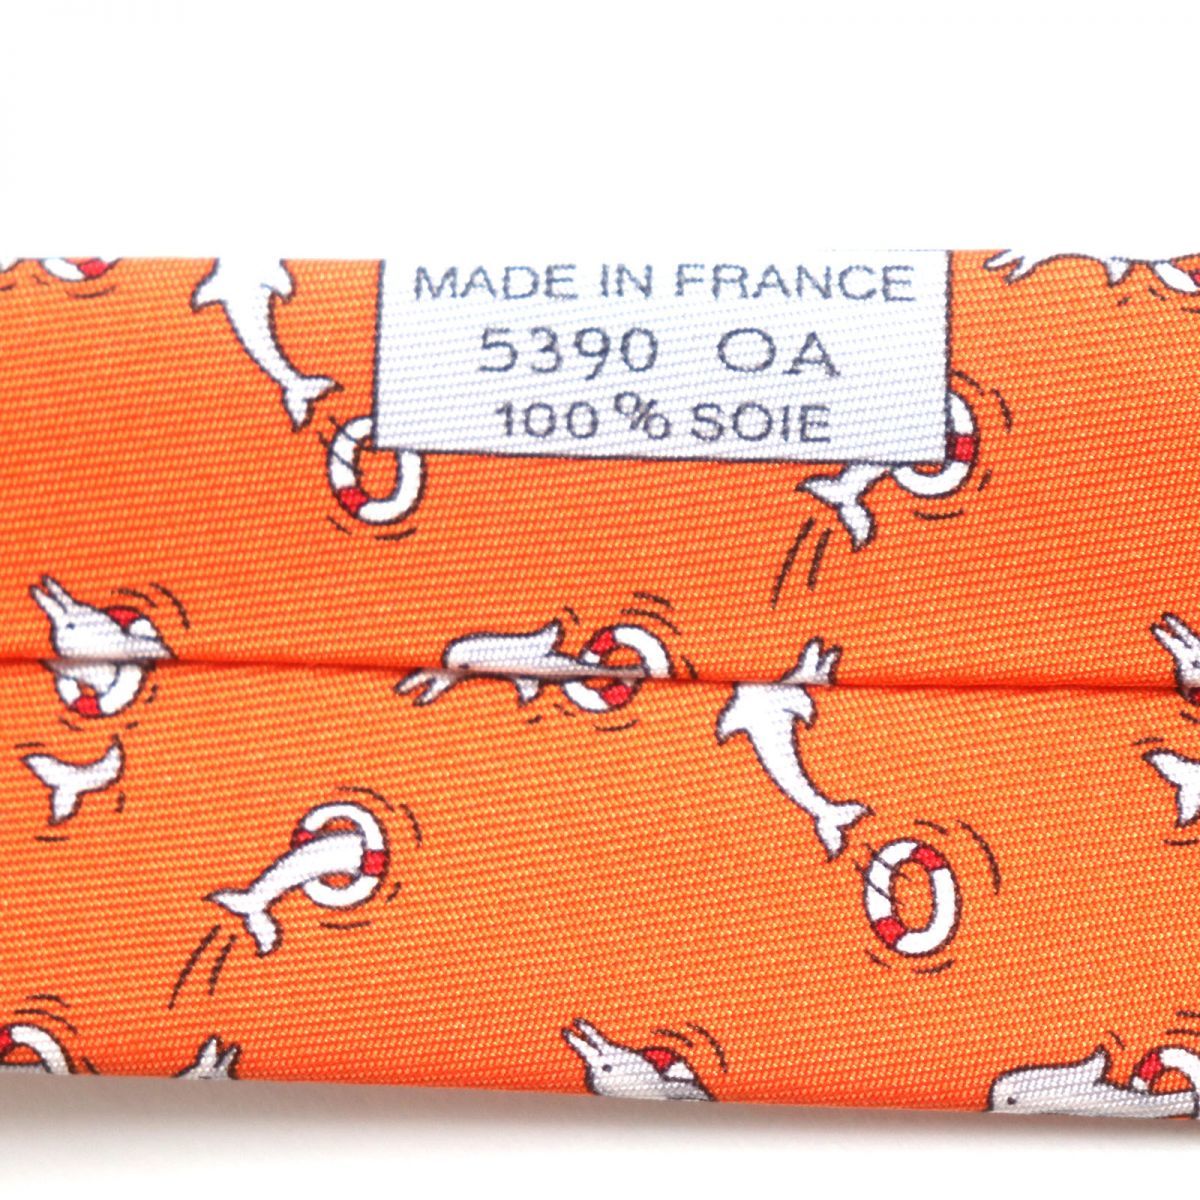  не использовался товар VHERMES Hermes klavato5390 дельфин рисунок шелк 100% галстук orange Франция производства мужской бизнес рекомендация * коробка * с биркой 